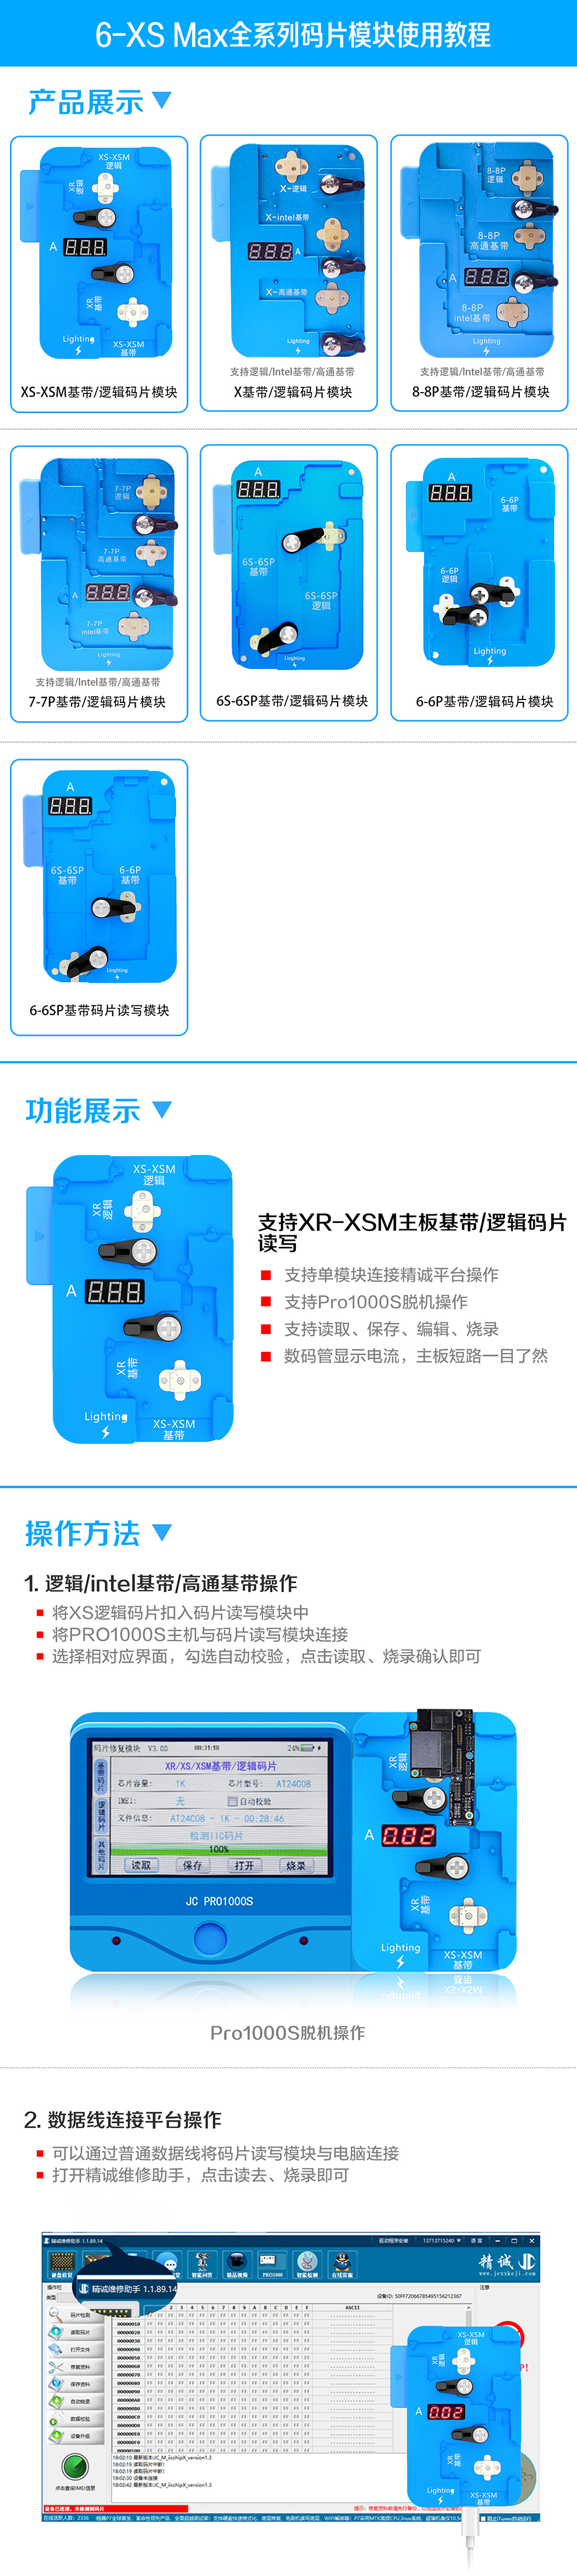 6-XS Max码片模块中文版.jpg